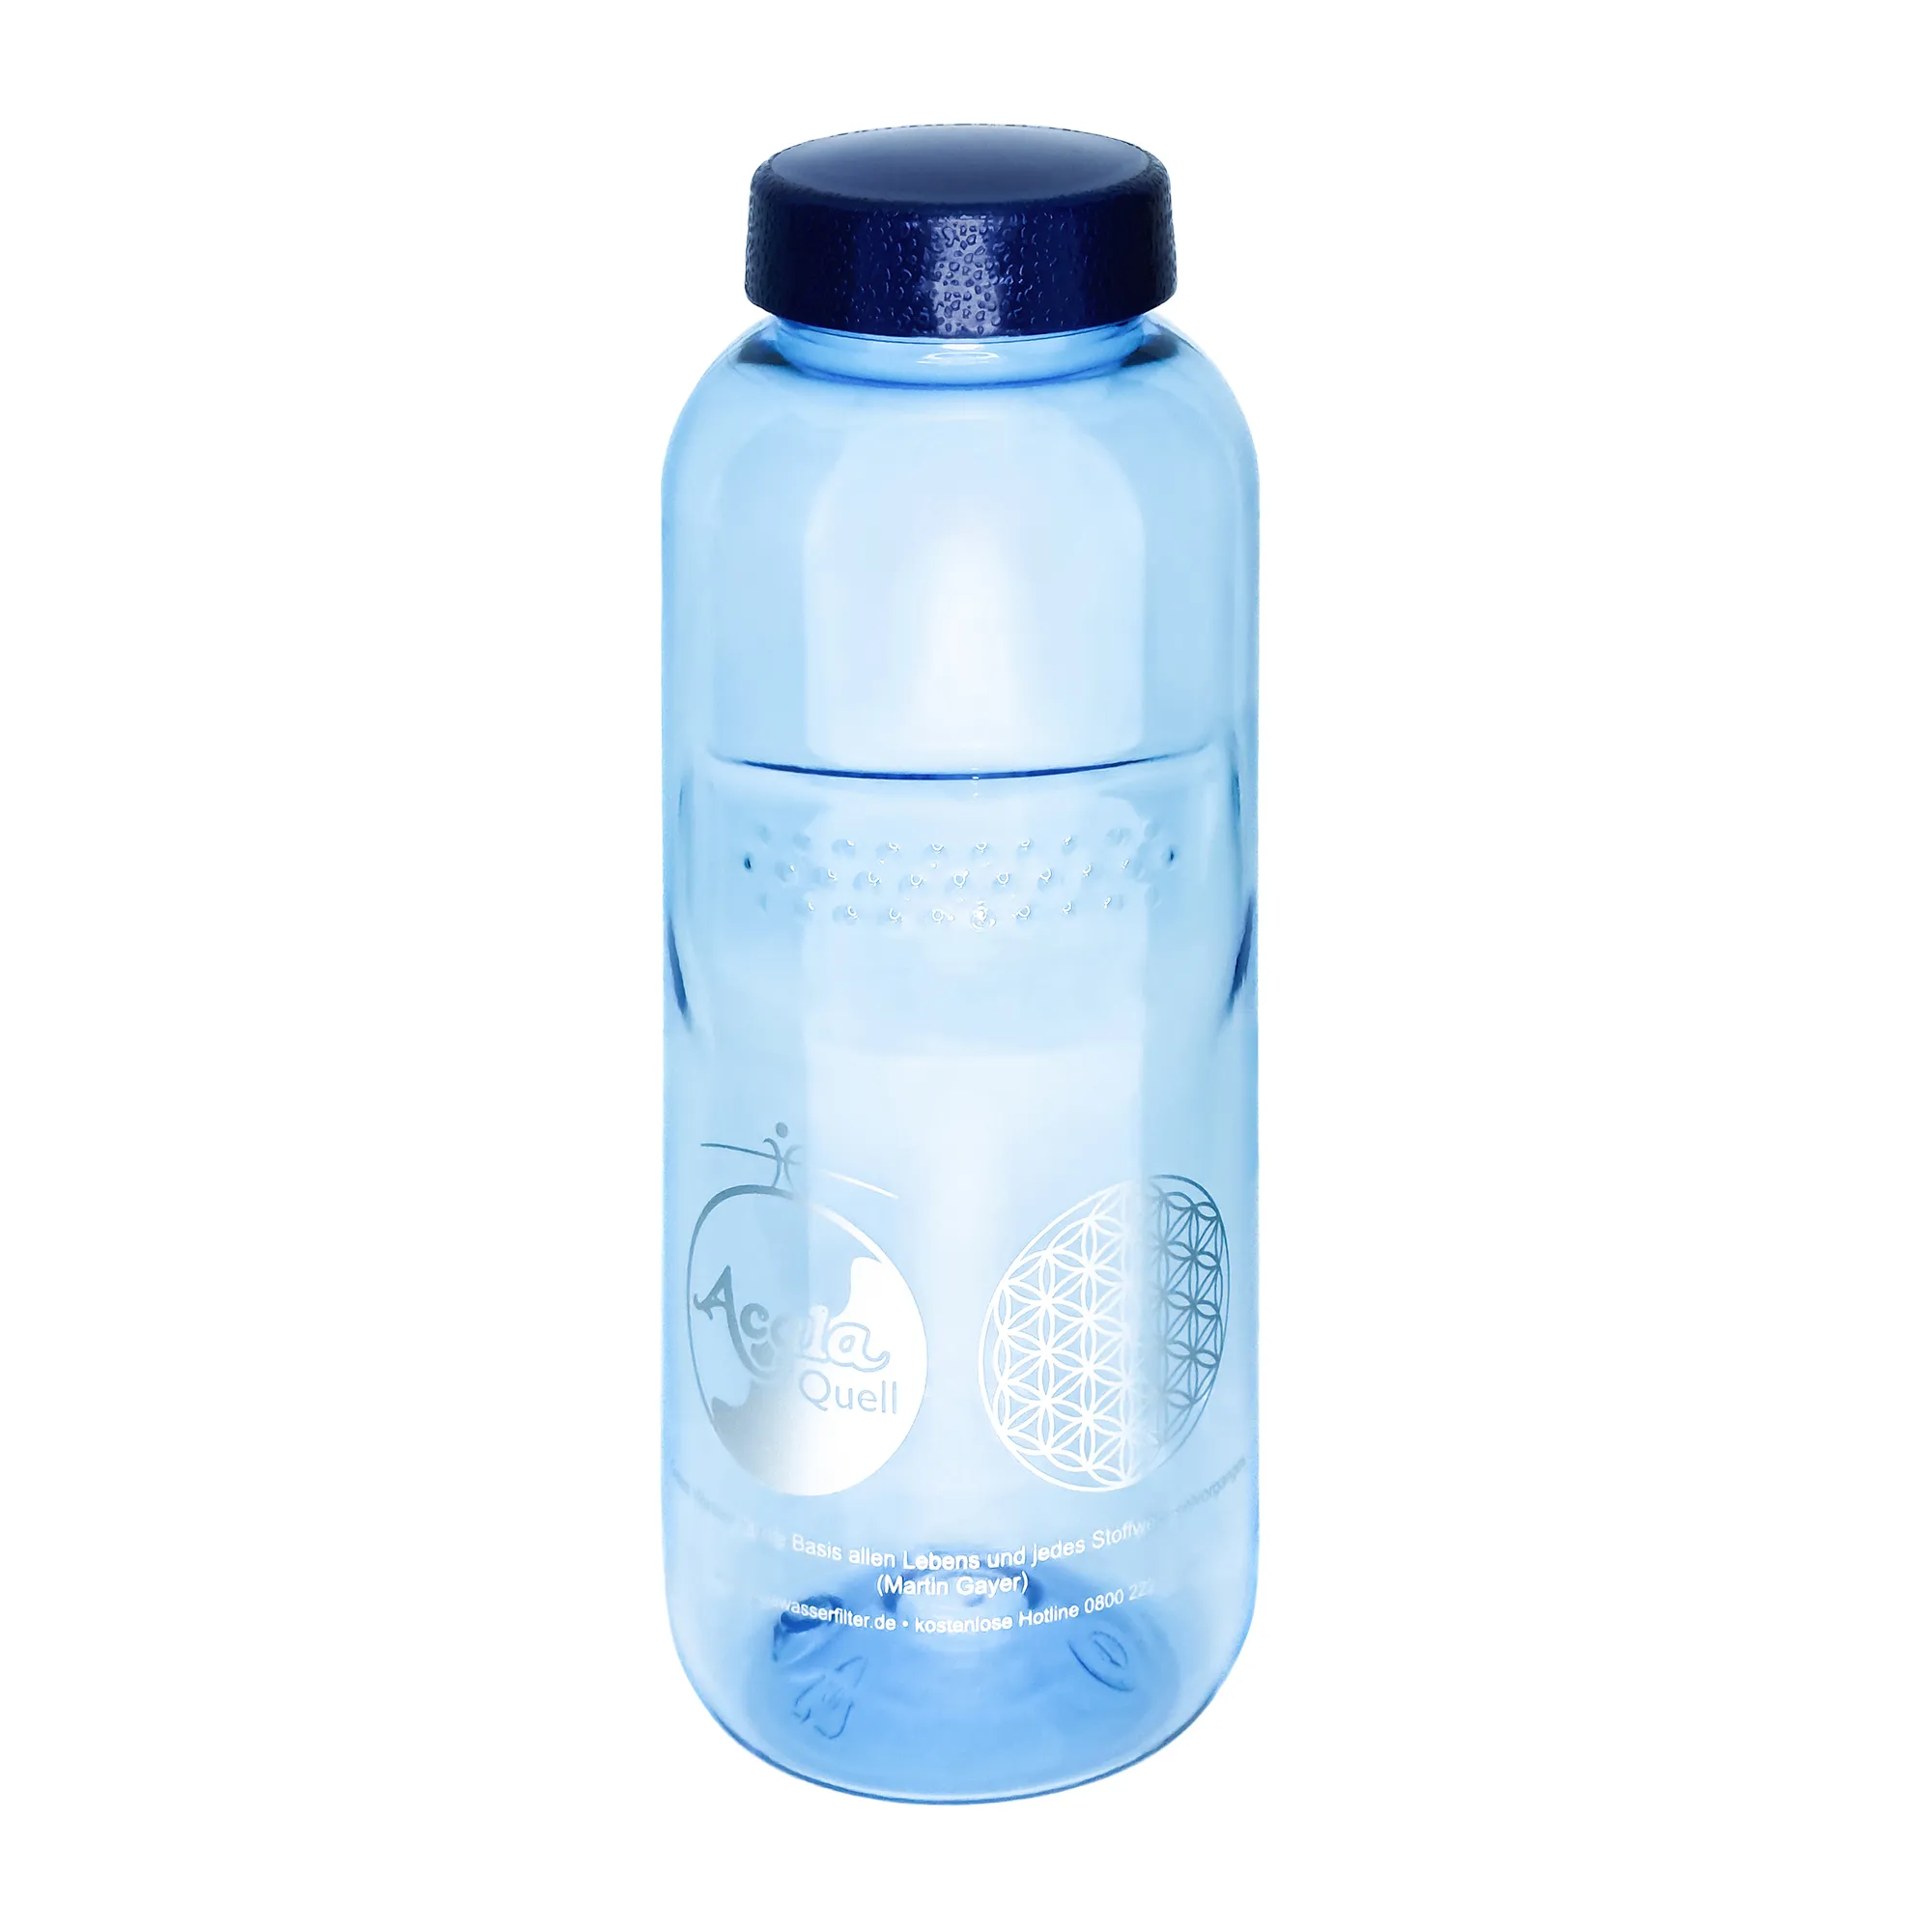 Zu sehen ist eine blaue Tritan Trinkflasche Grip mit dunkelblauem Schraubdeckel vor weißem Hintergrund. Man sieht ein silbernes Acala Logo und die Blume des Lebens auf der Flasche.